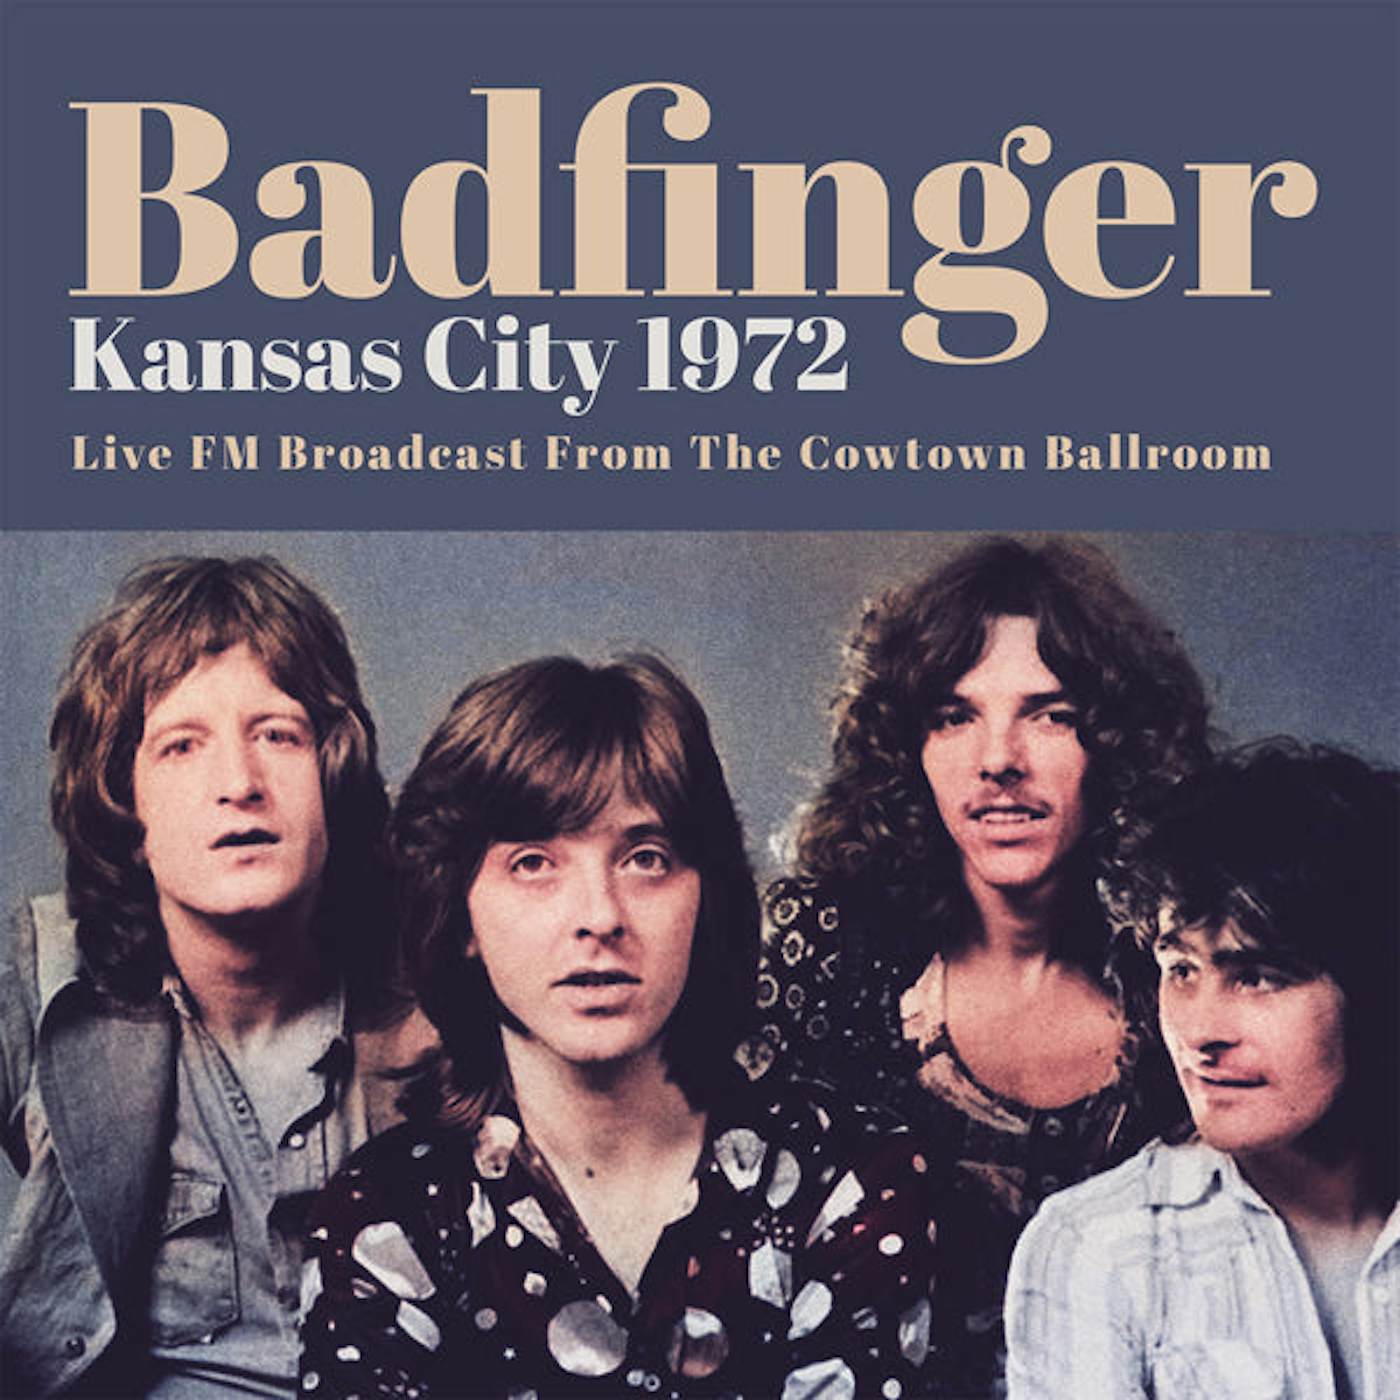 Badfinger LP - Kansas City 1972 (Vinyl)